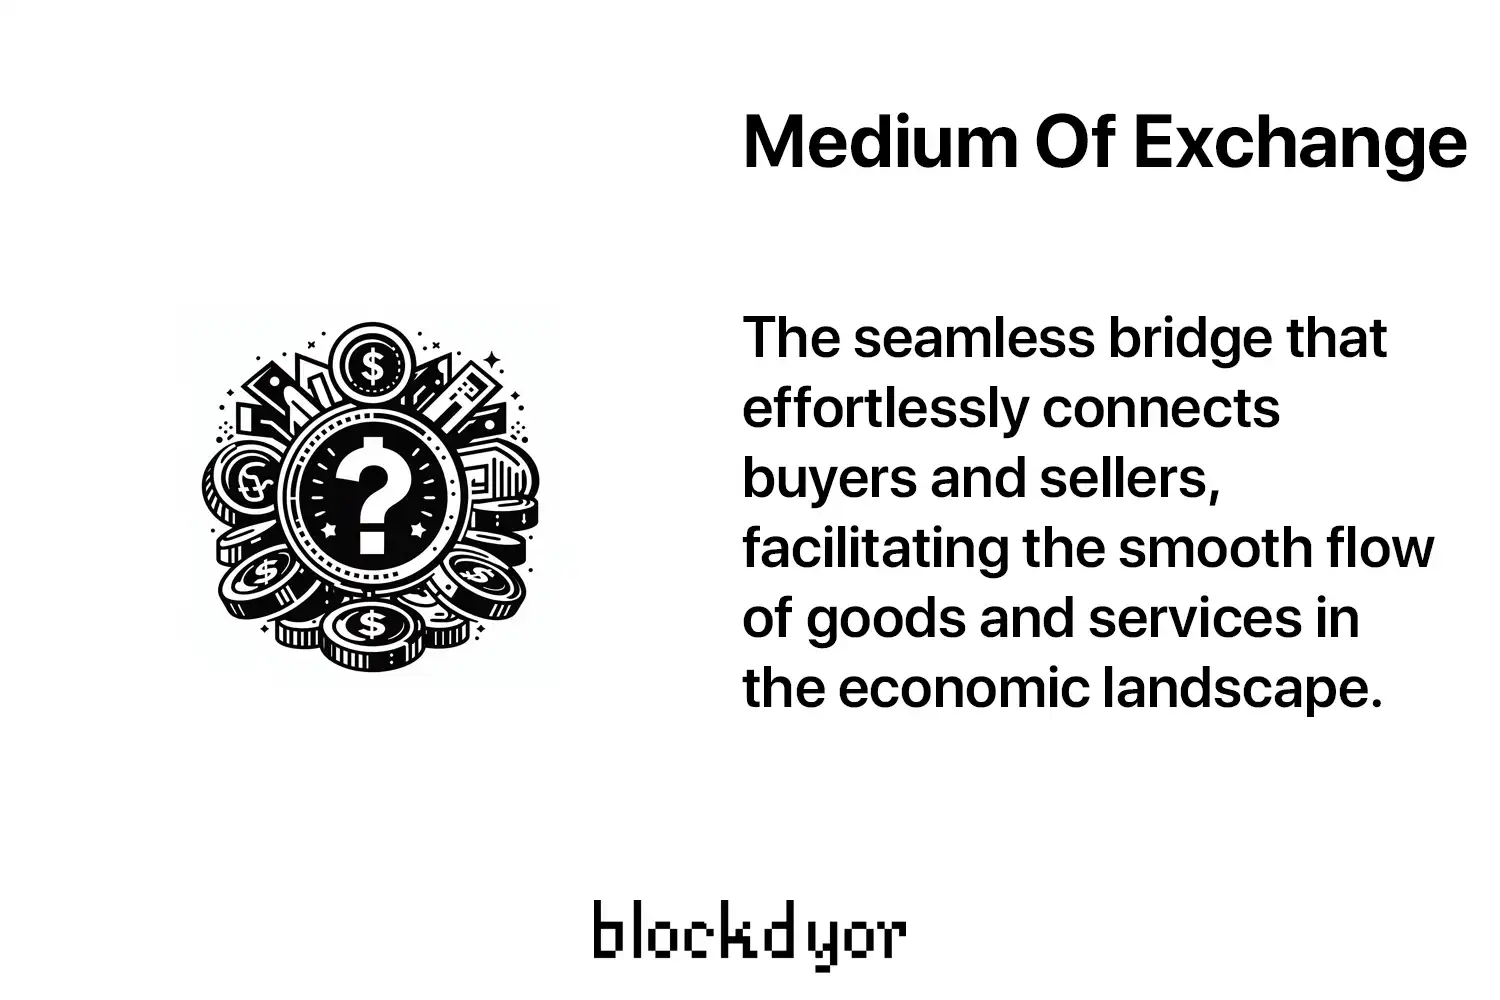 Medium Of Exchange Overview